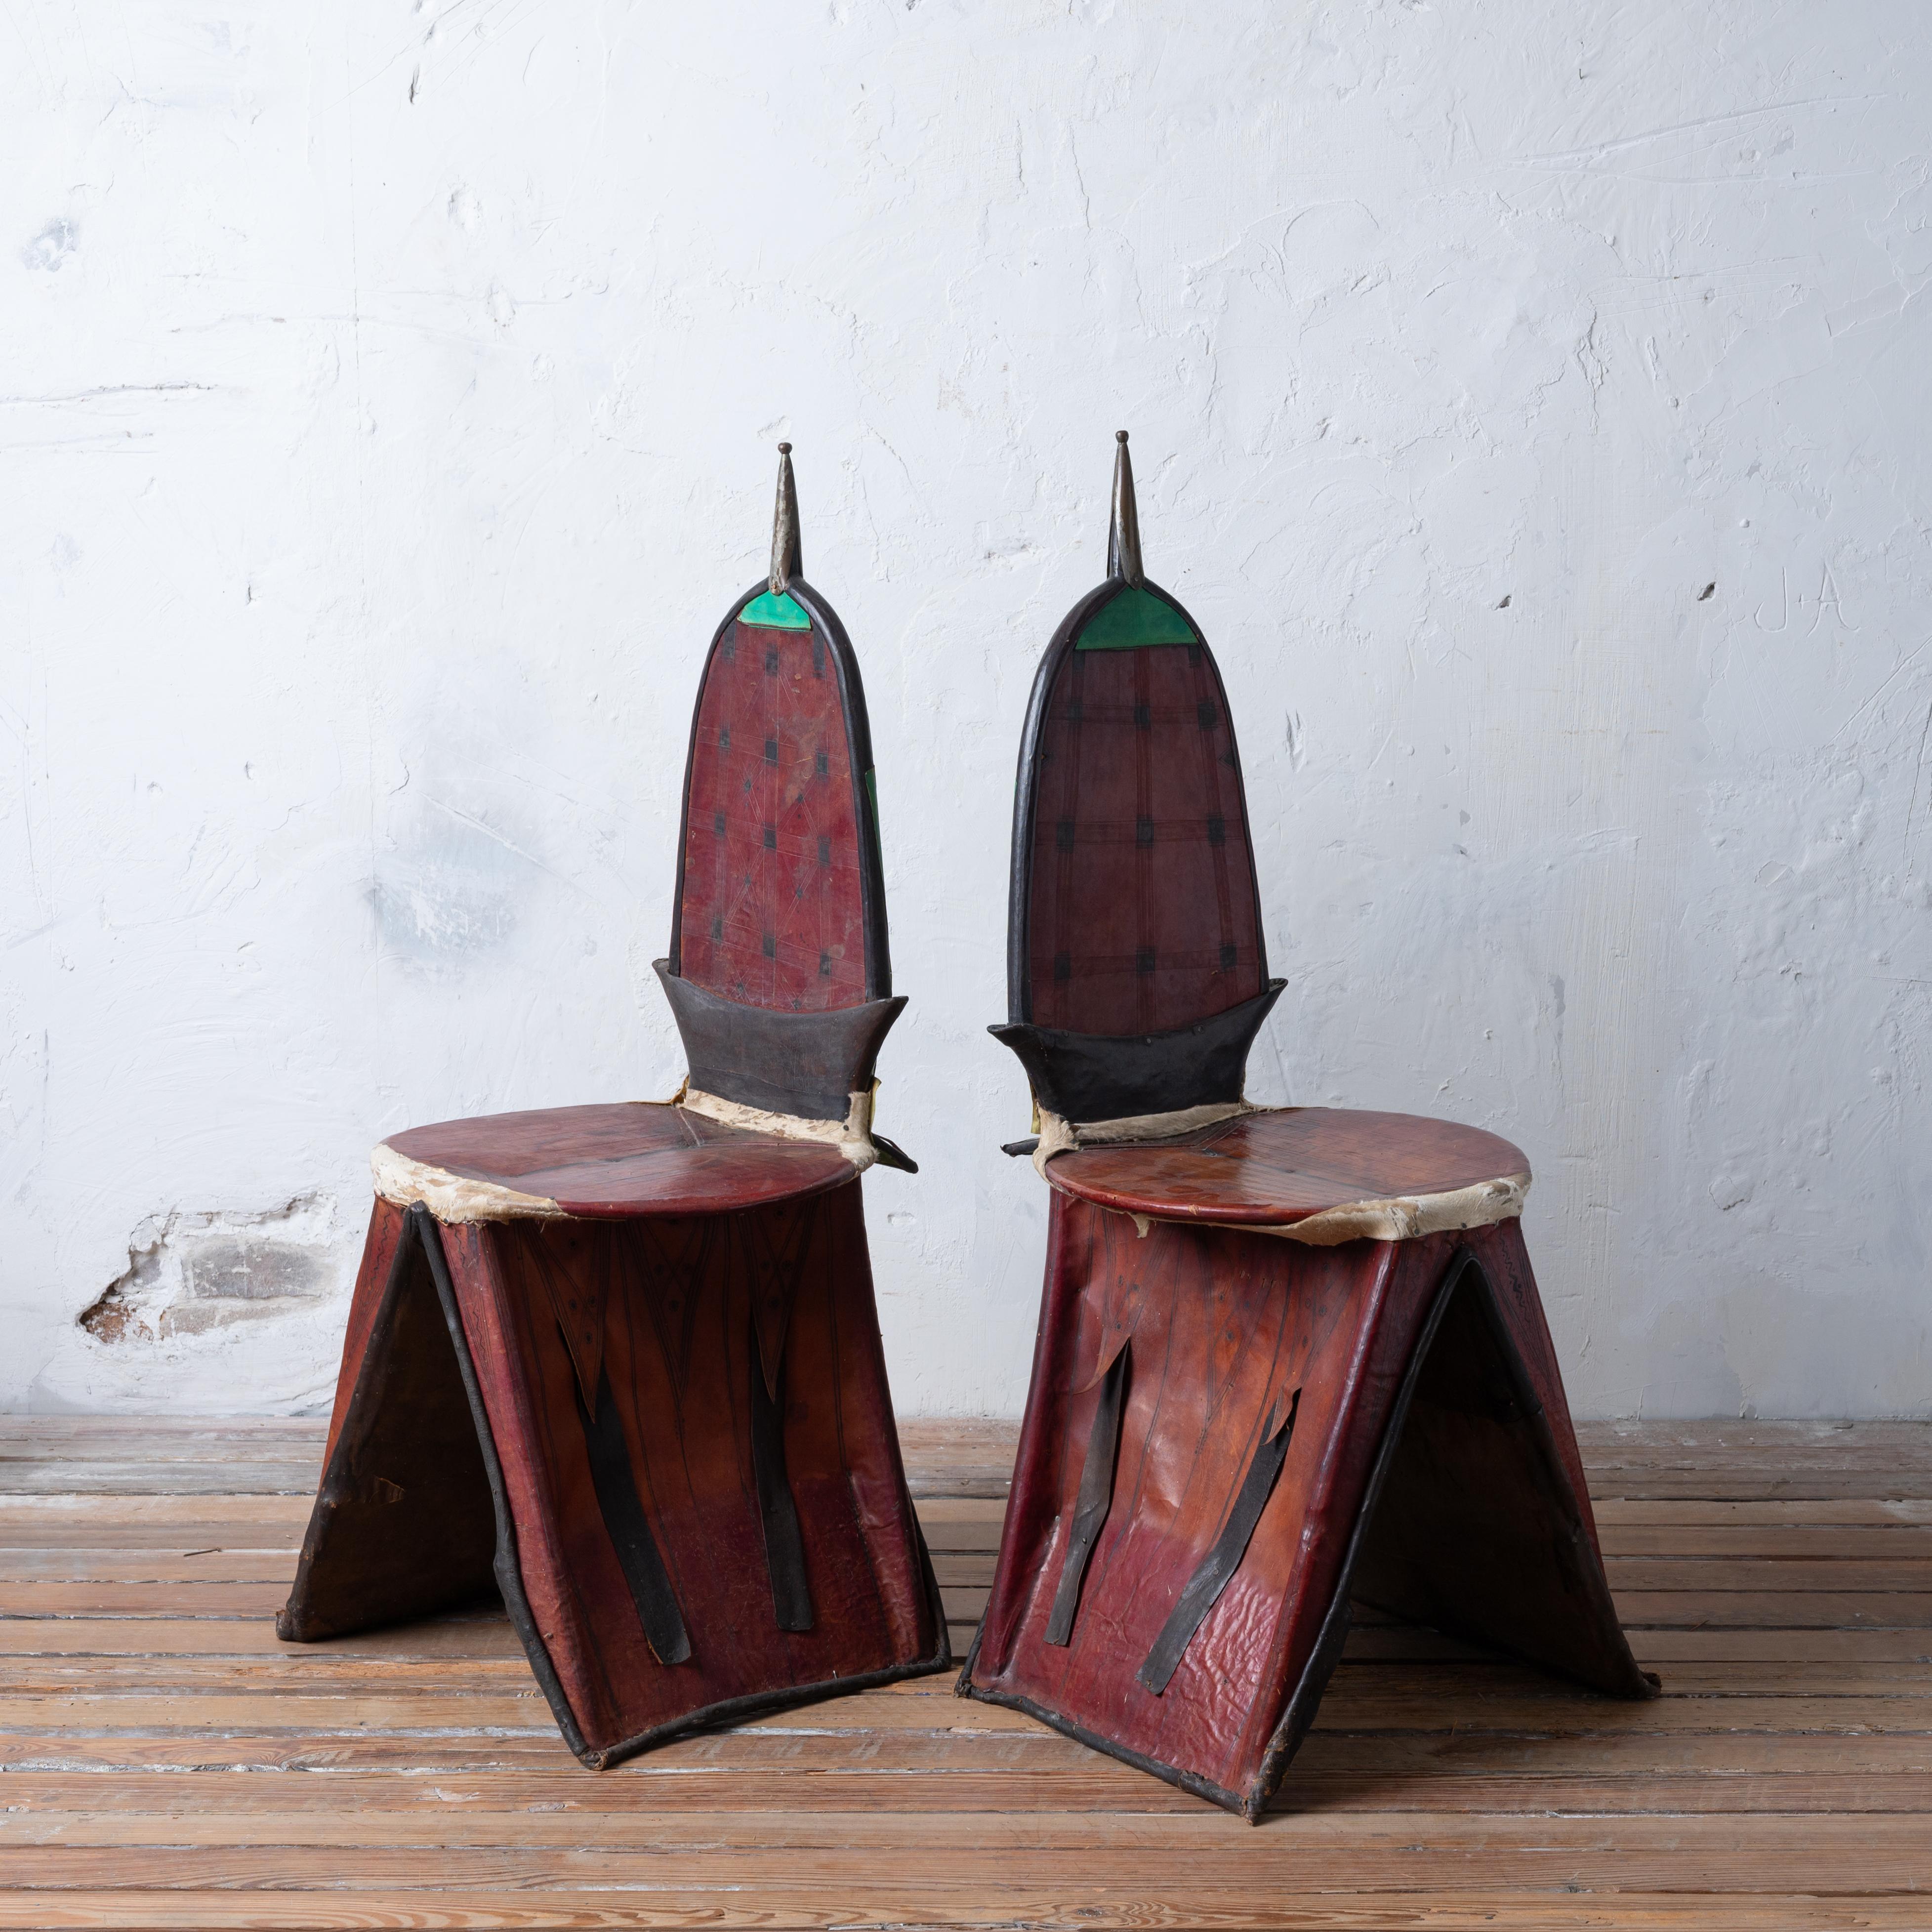 Tuareg Berber Tamzak Camel Saddle Chairs - A Pair For Sale 1